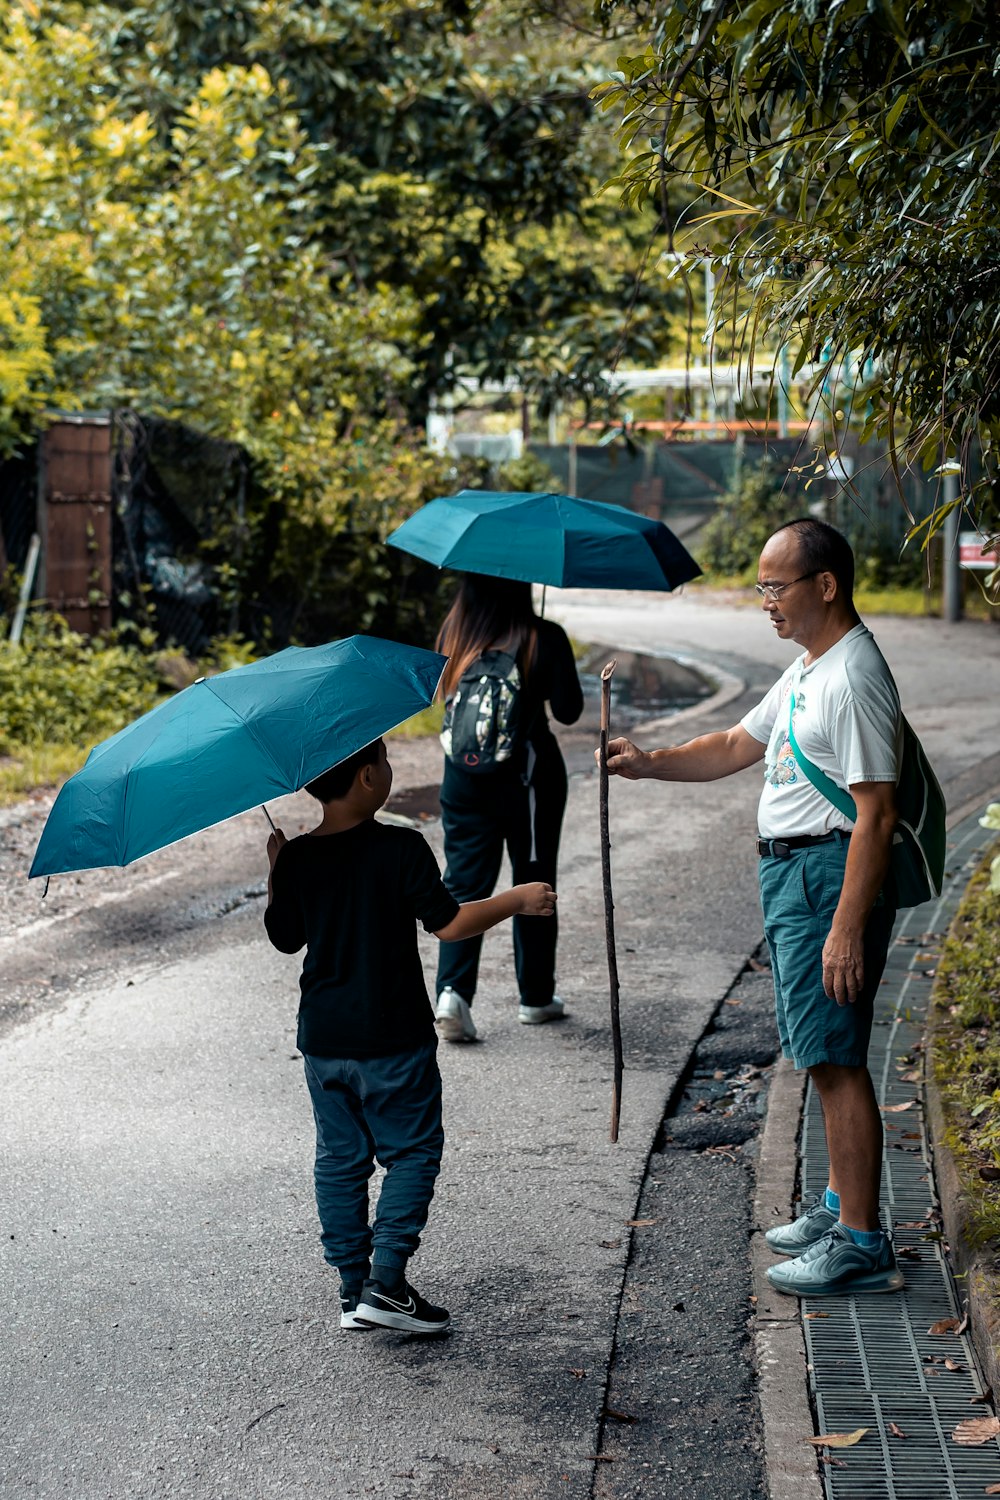 Mann in schwarzem T-Shirt, der tagsüber einen Regenschirm hält und auf der Straße spazieren geht